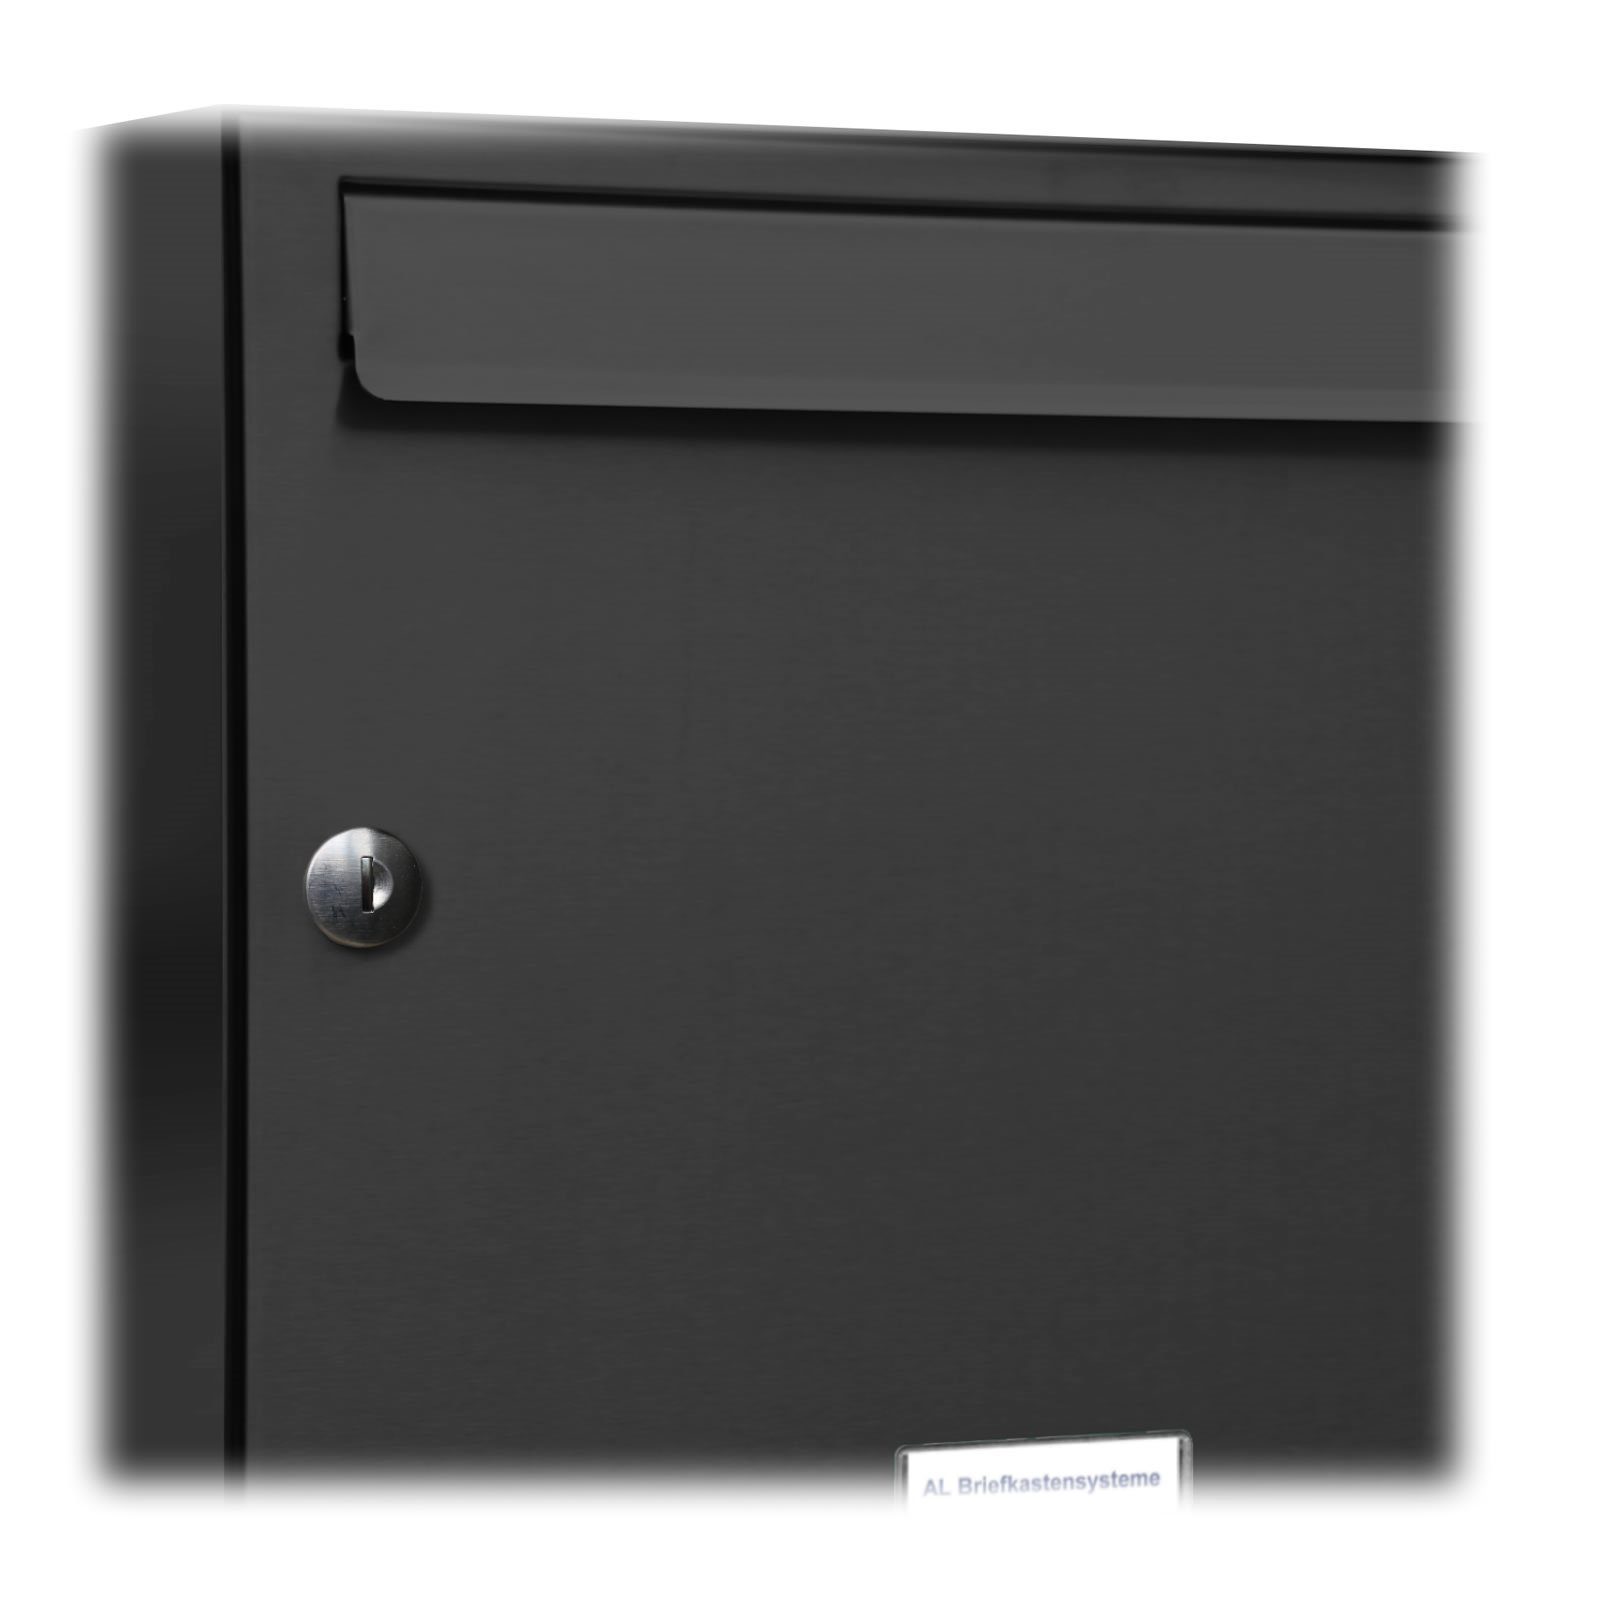 Briefkastensysteme RAL Premium 7016 Außen 1x2S Klingel 2er Briefkasten Wandbriefkasten Anthrazit 3 Farbe AL